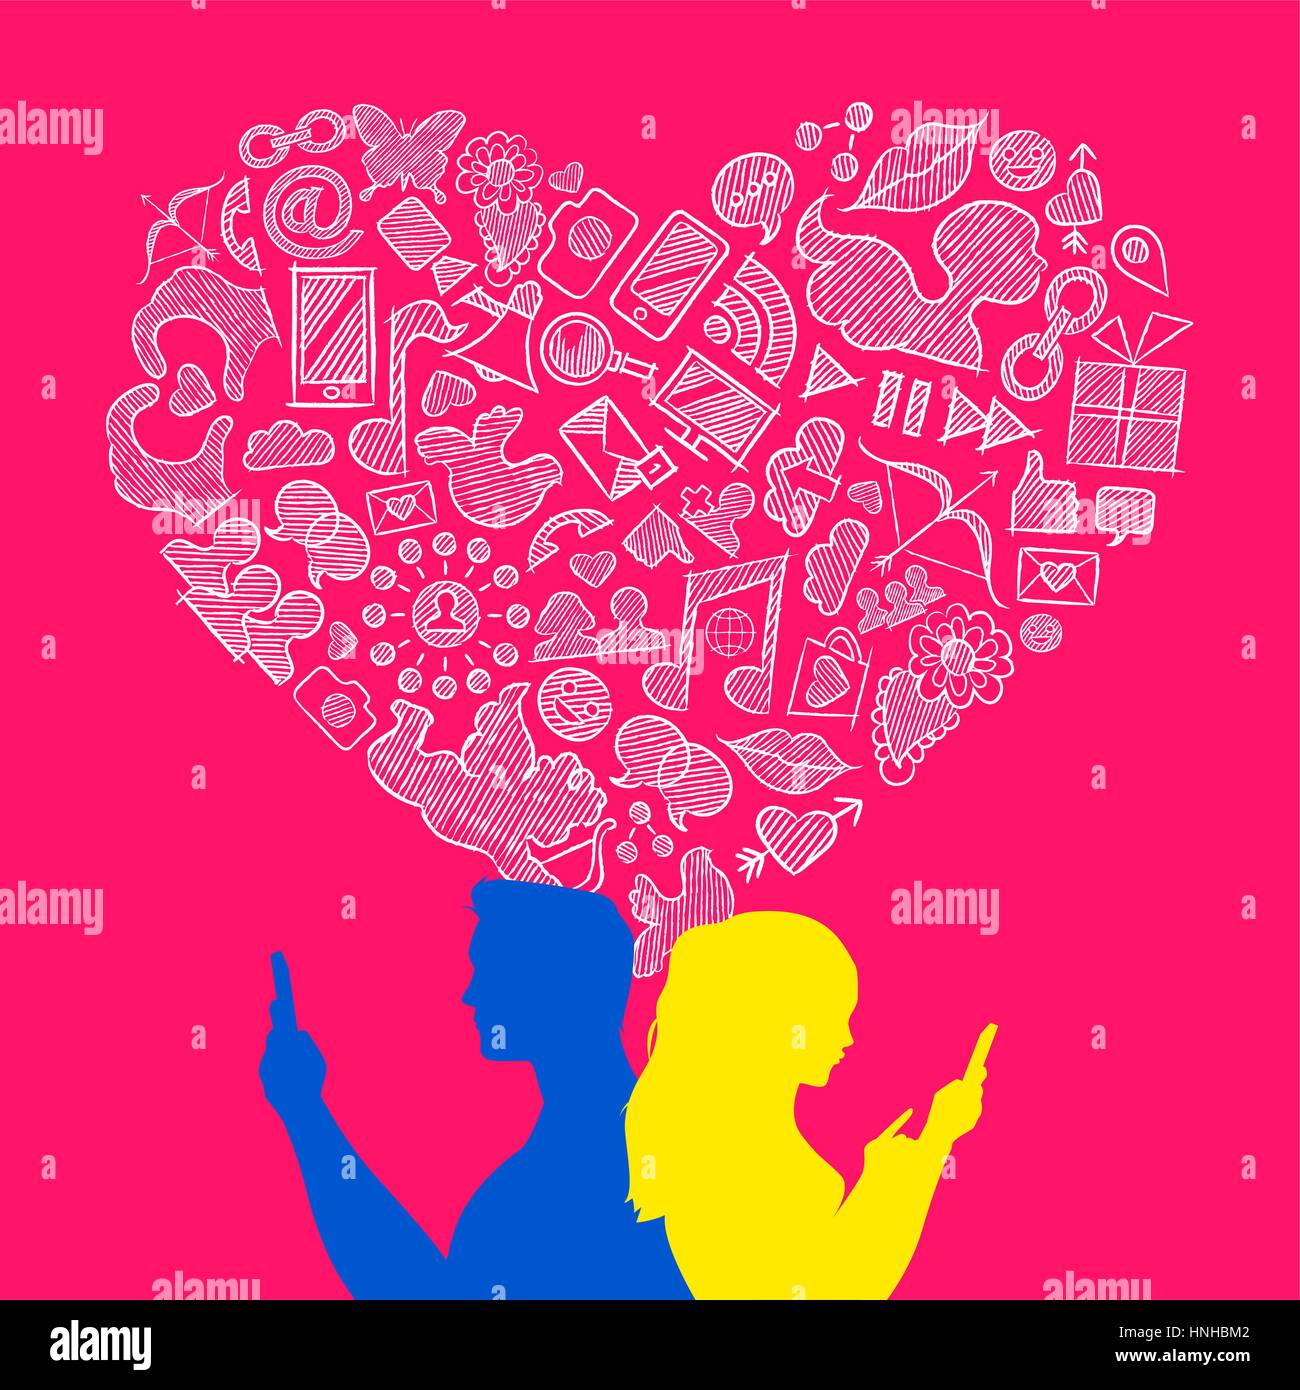 Internet mobile Verbindung Socialmedia heterosexuellen Liebe Konzept Abbildung. Junger Mann und Frau Paar auf smart Phone mit Hand gezeichneten Symbole in hea Stock Vektor